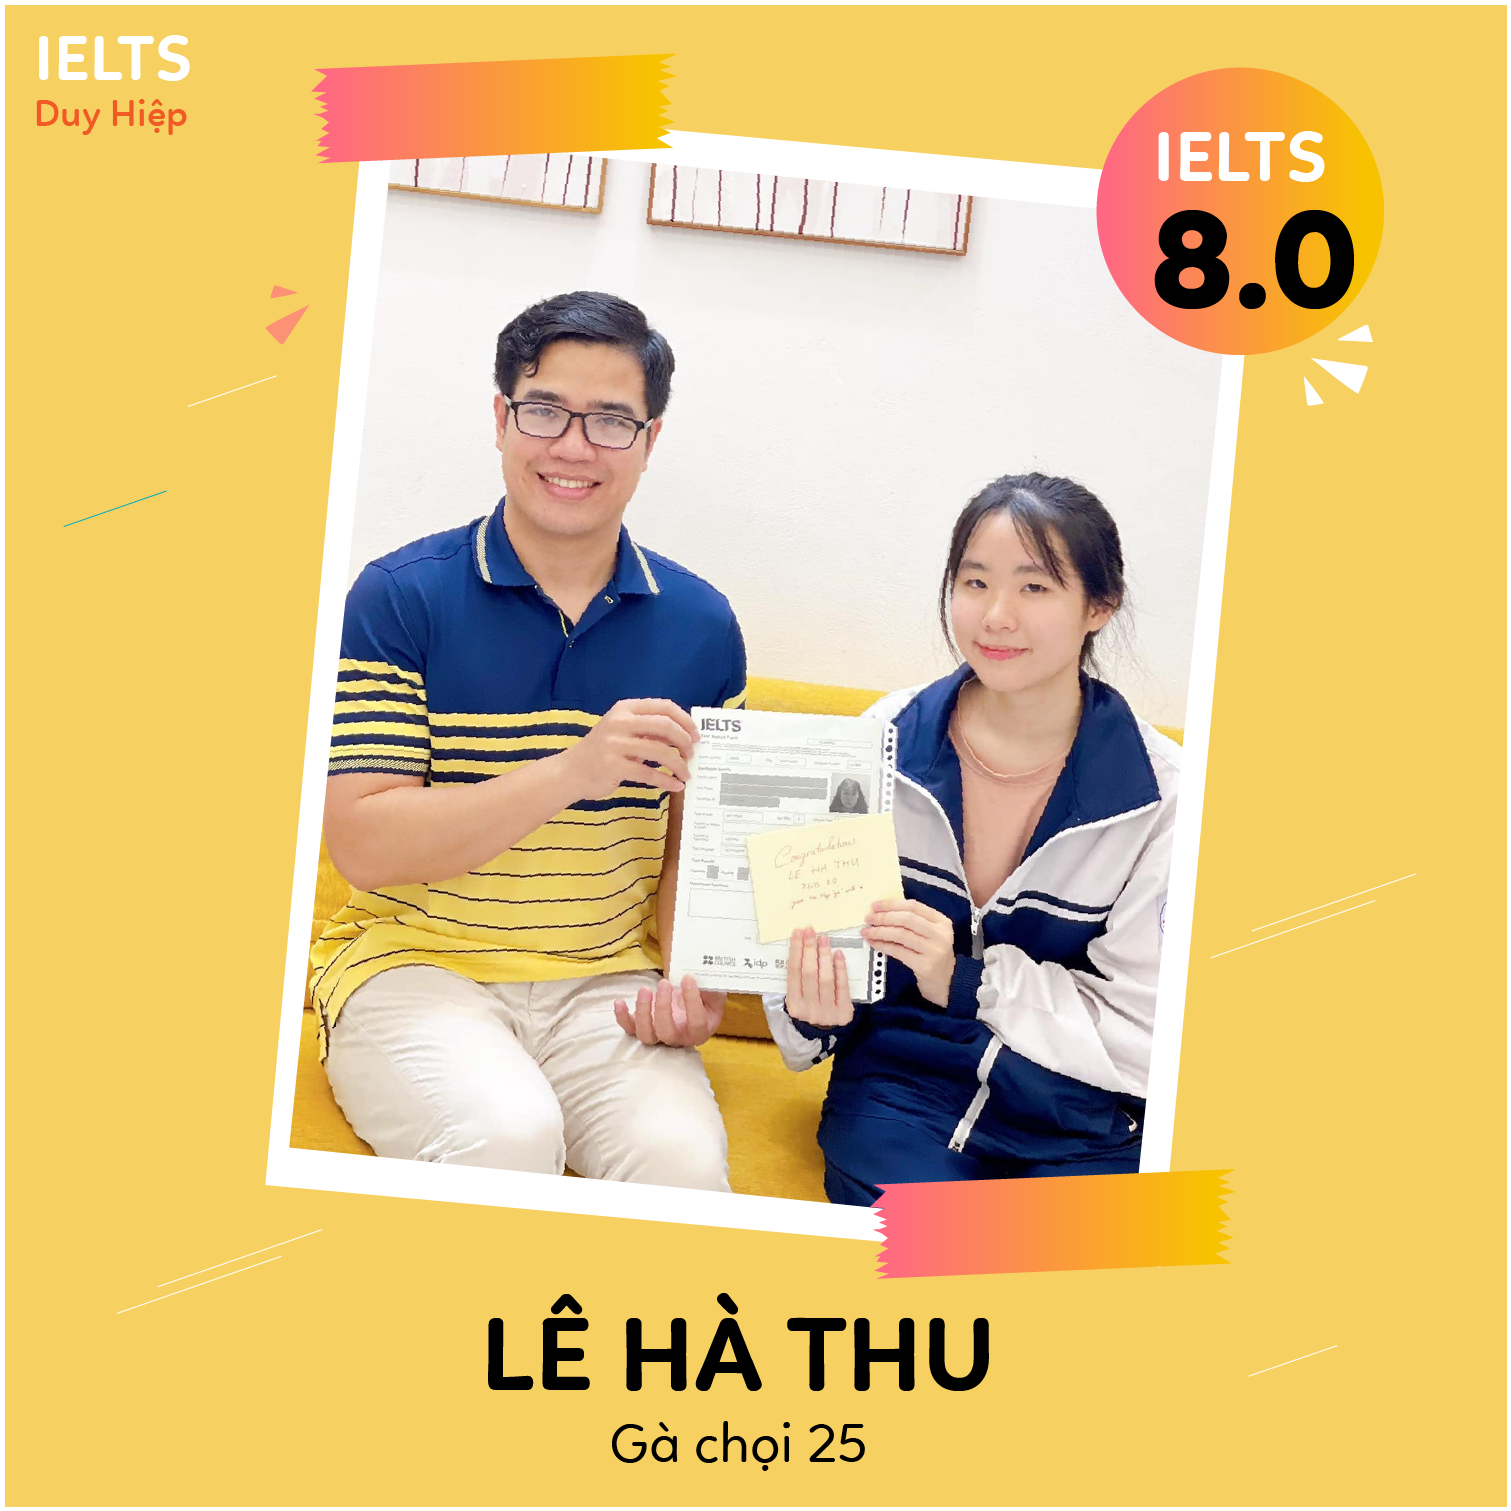 WALL OF FAME - Lê Hà Thu 8.0 IELTS